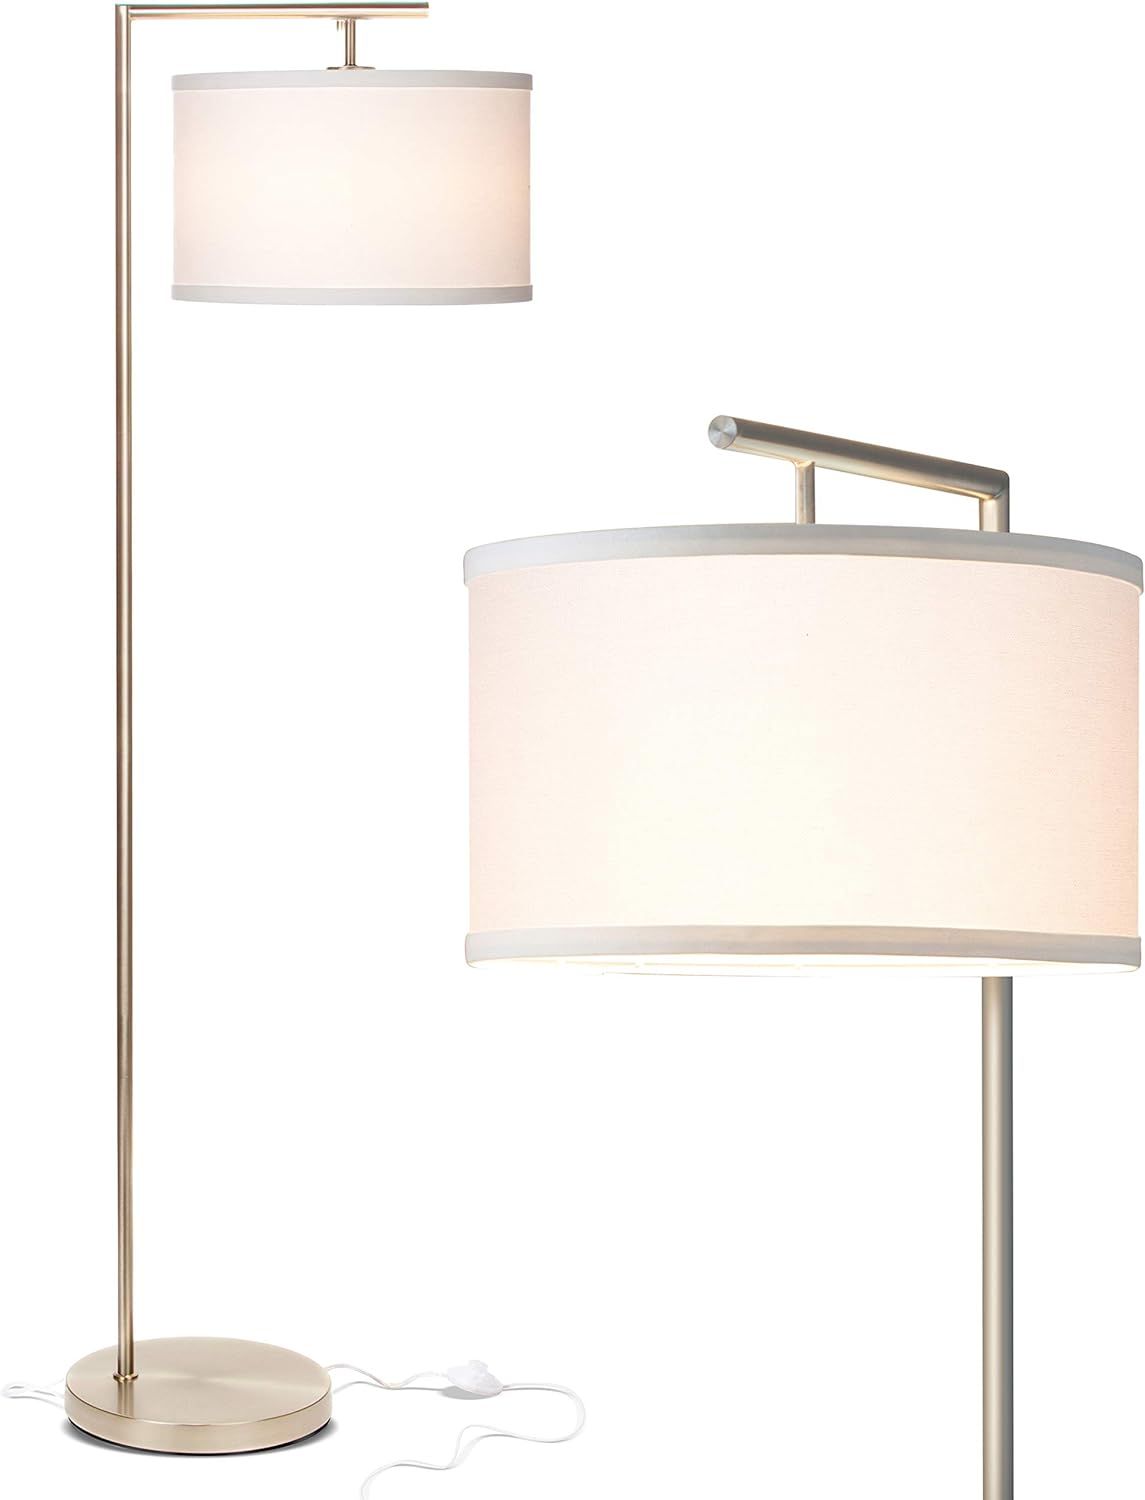 Brightech Montage Modern - Floor Lamp for Living Room Lighting - Bedroom & Nursery Standing Accen... | Amazon (US)